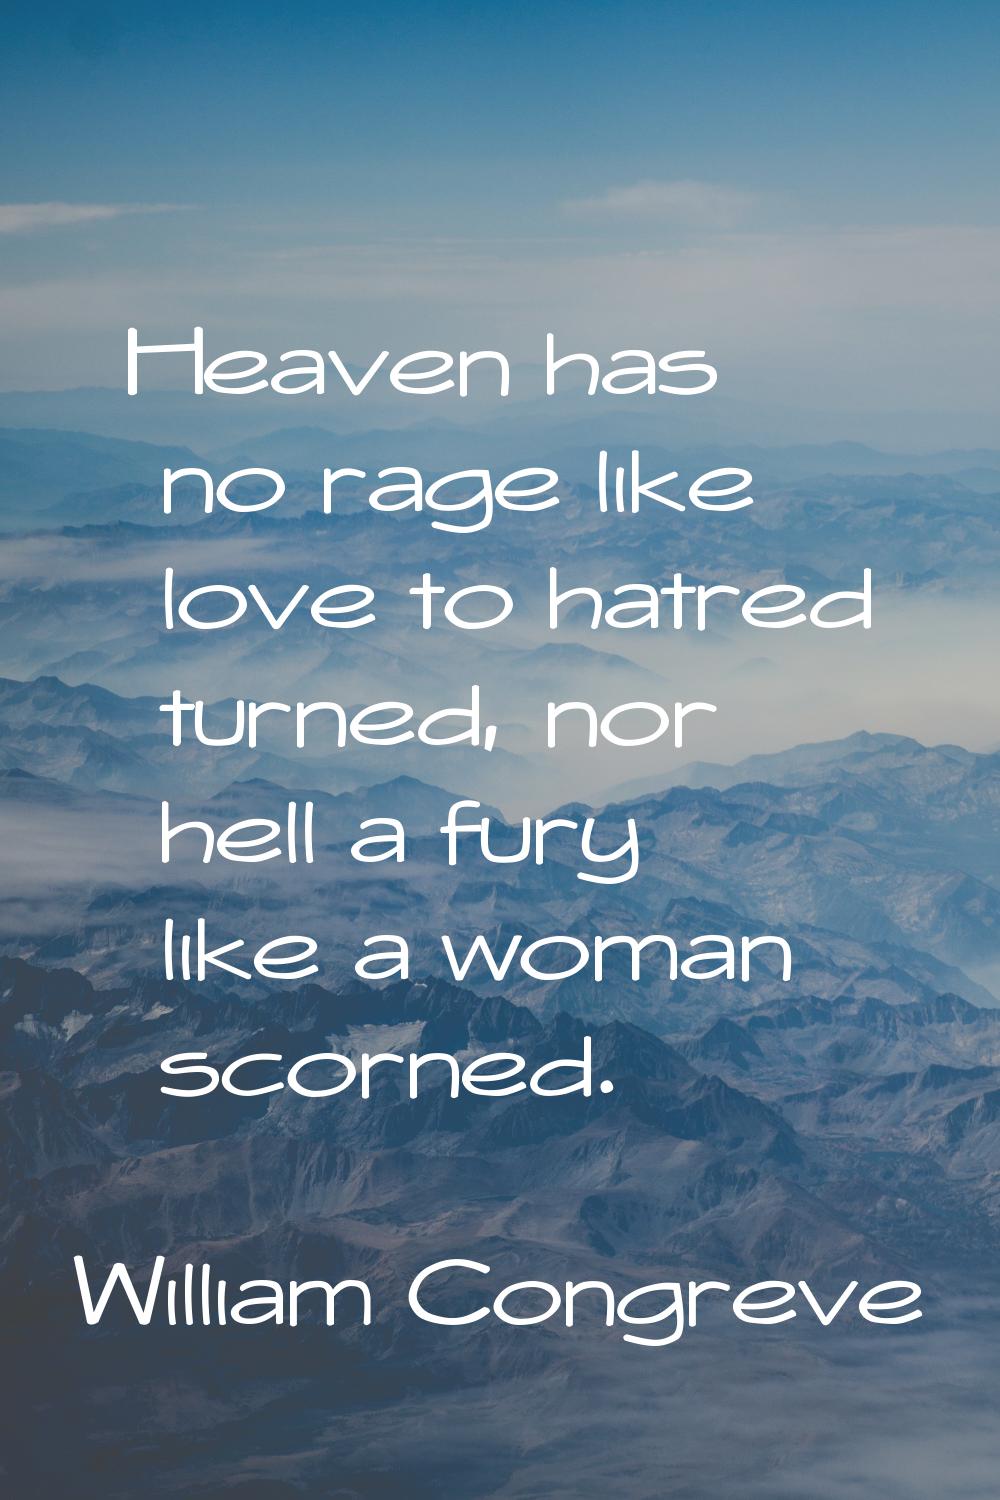 Heaven has no rage like love to hatred turned, nor hell a fury like a woman scorned.